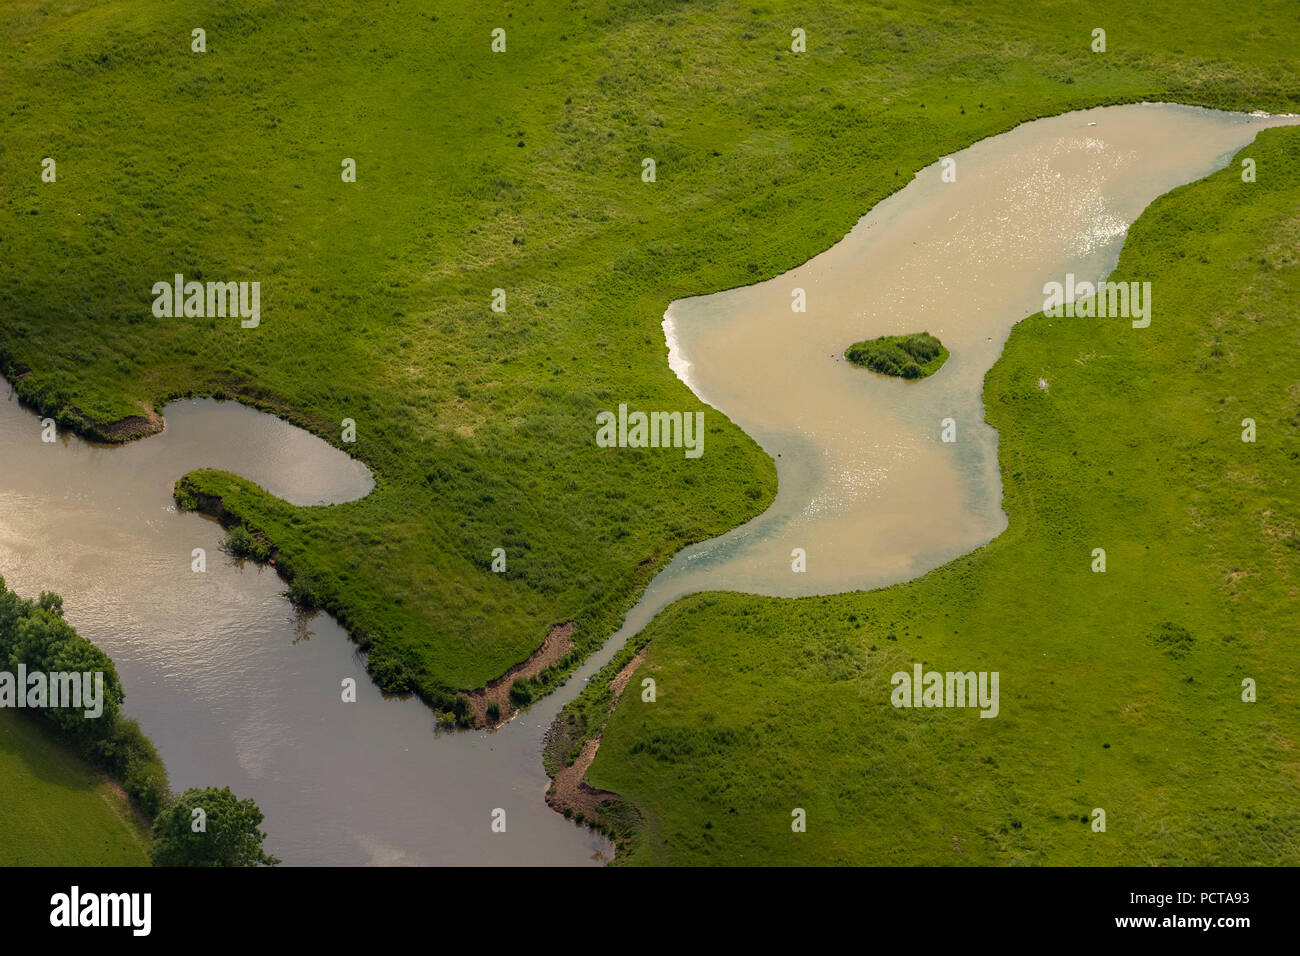 Prato umido nei meandri del fiume Lippe, risanamento ecologico, Hamm, la zona della Ruhr, Nord Reno-Westfalia, Germania Foto Stock